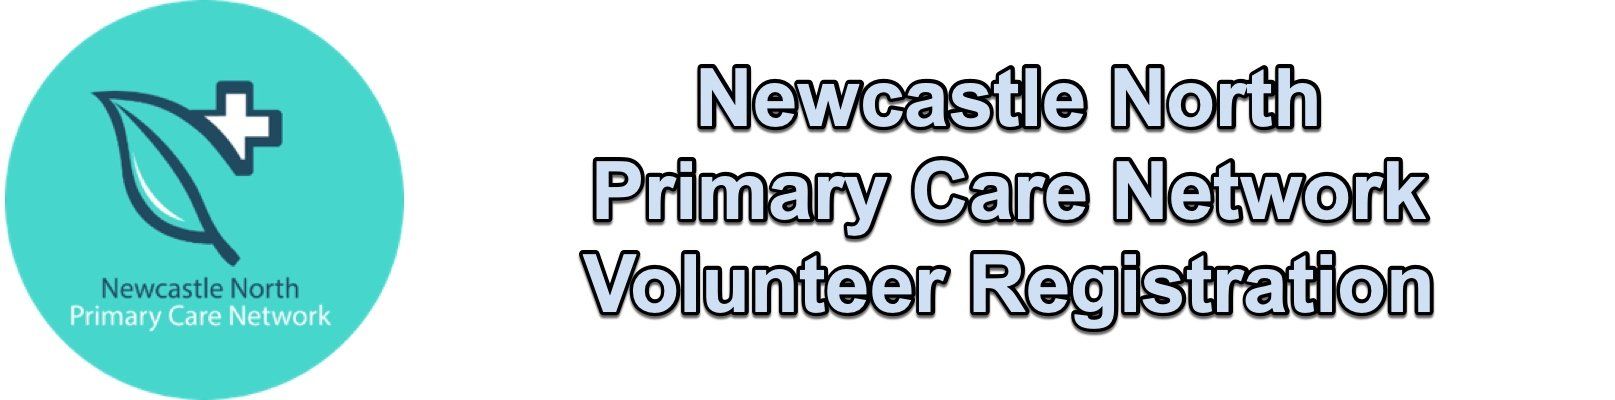 NN-PCN Volunteer registration header